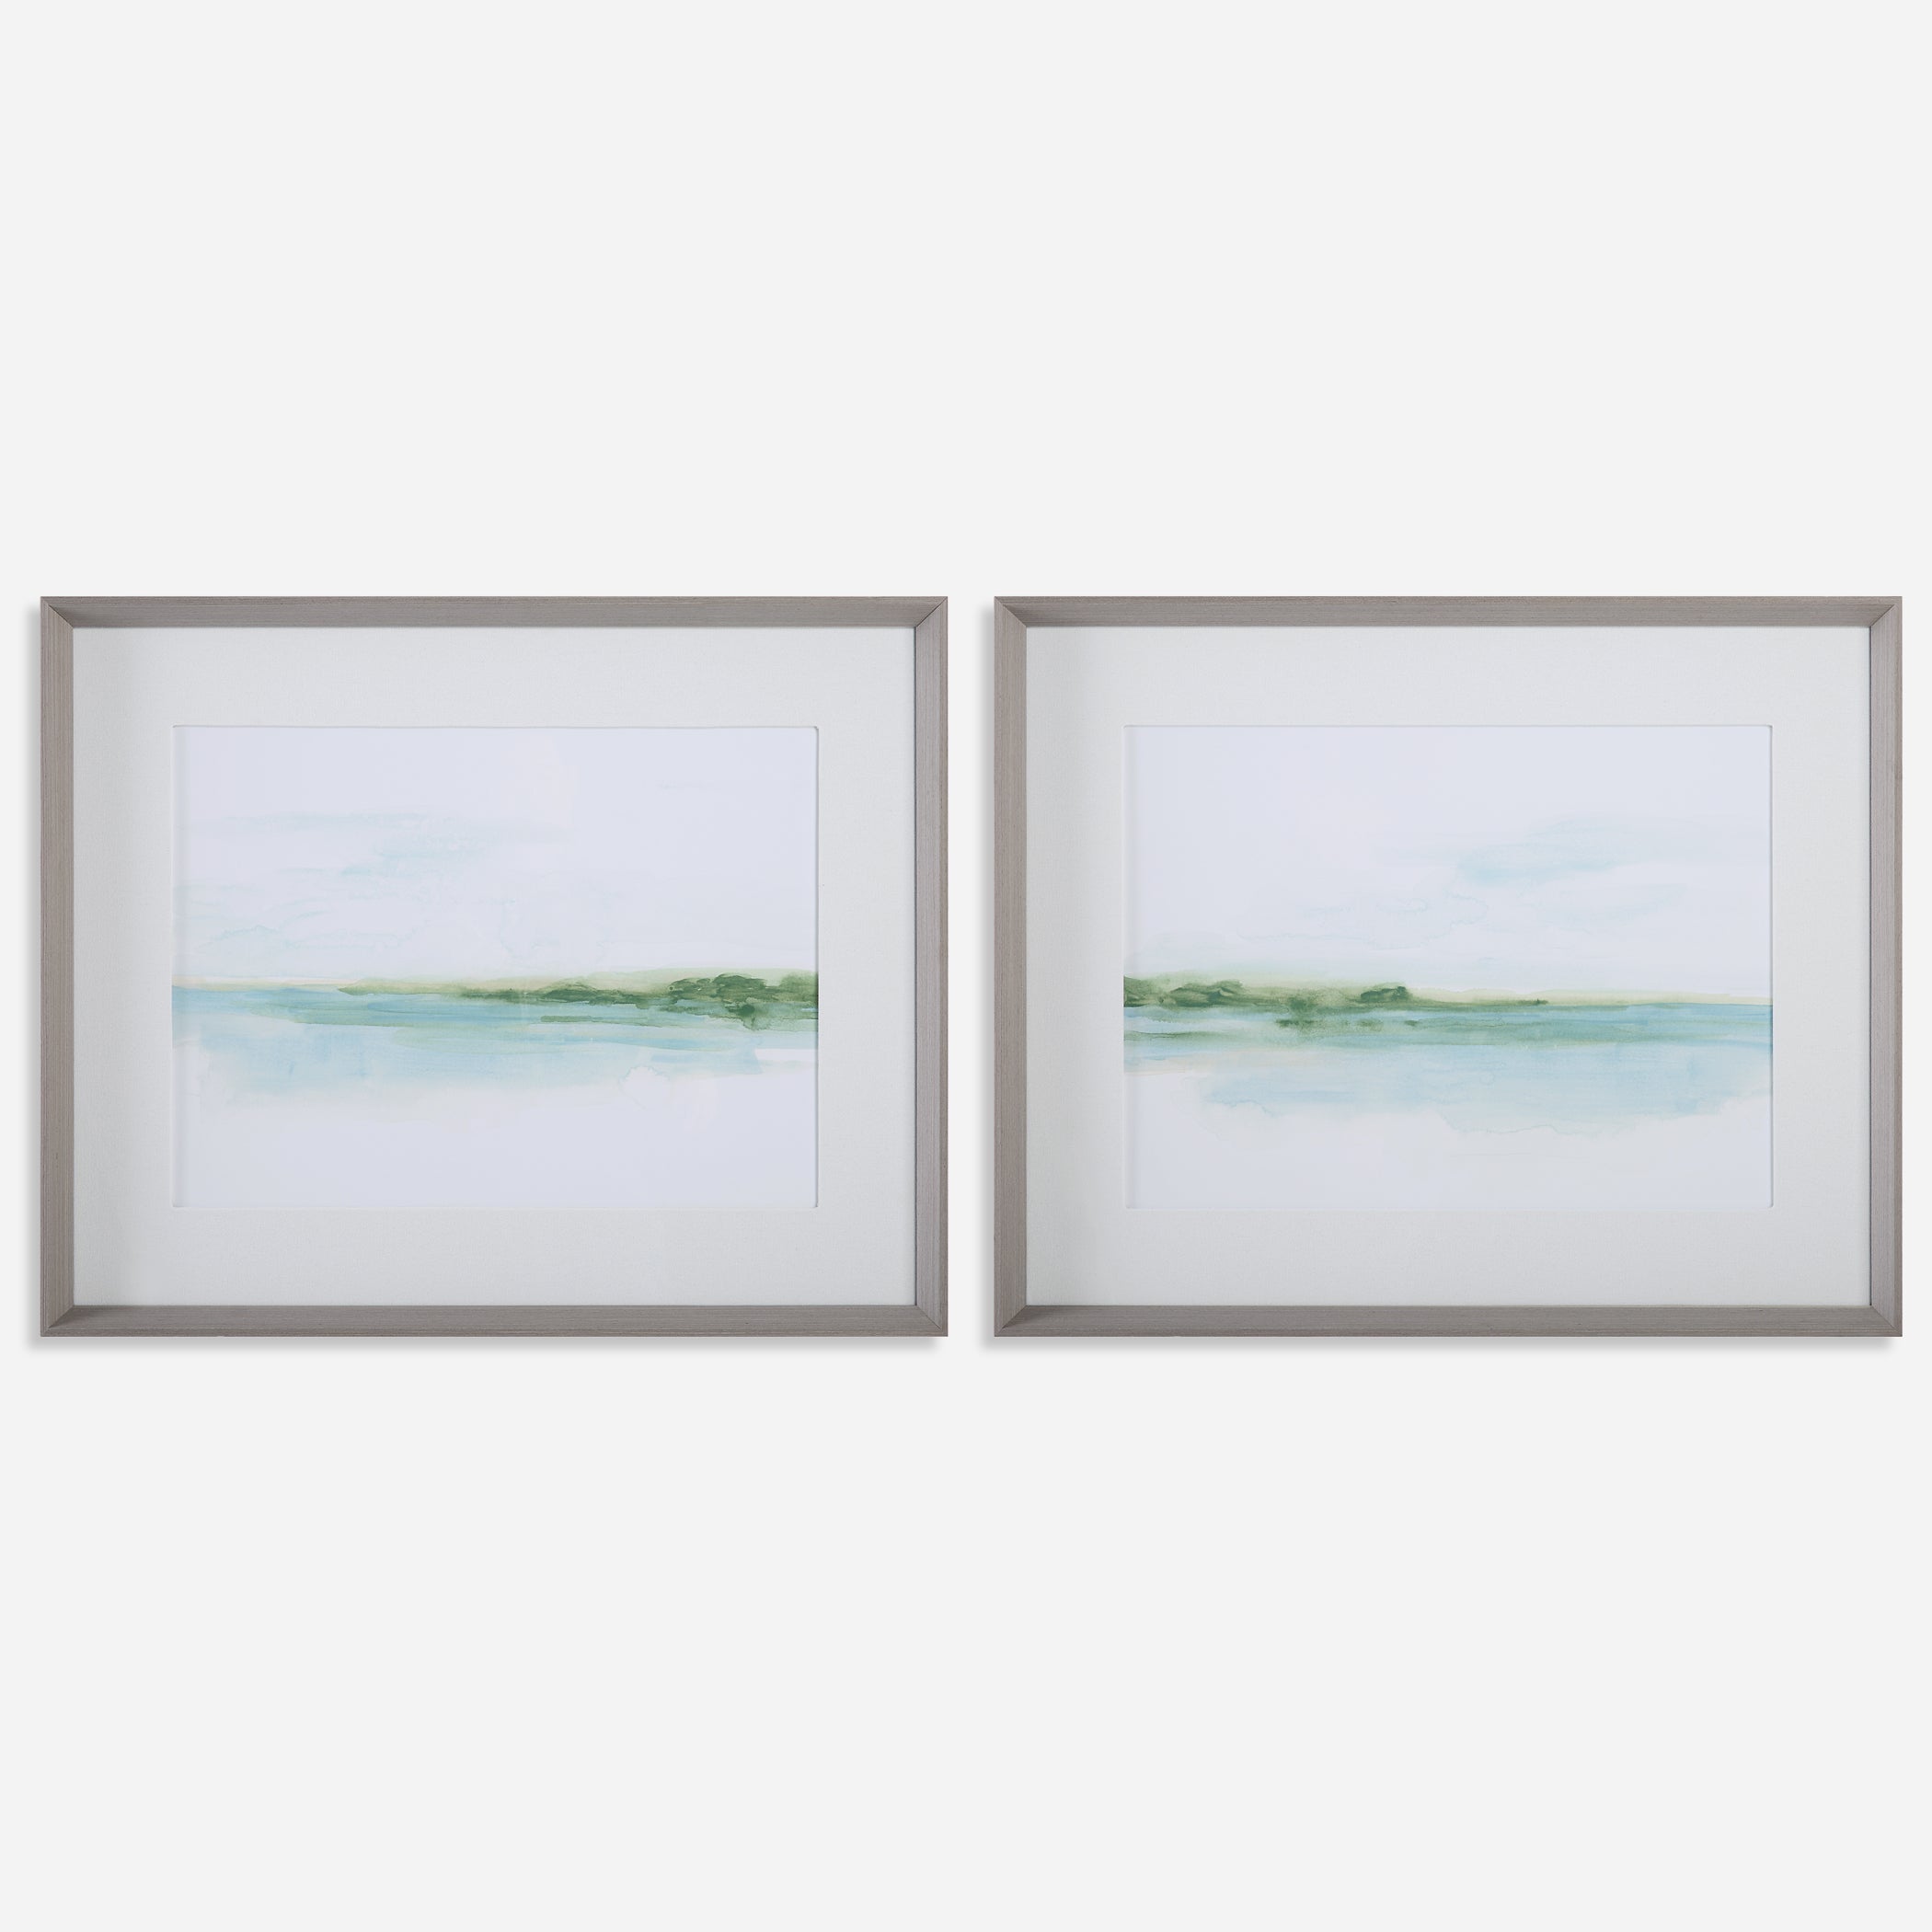 Uttermost Green Ribbon Coast Abstract Coastal Prints Abstract Coastal Prints Uttermost   